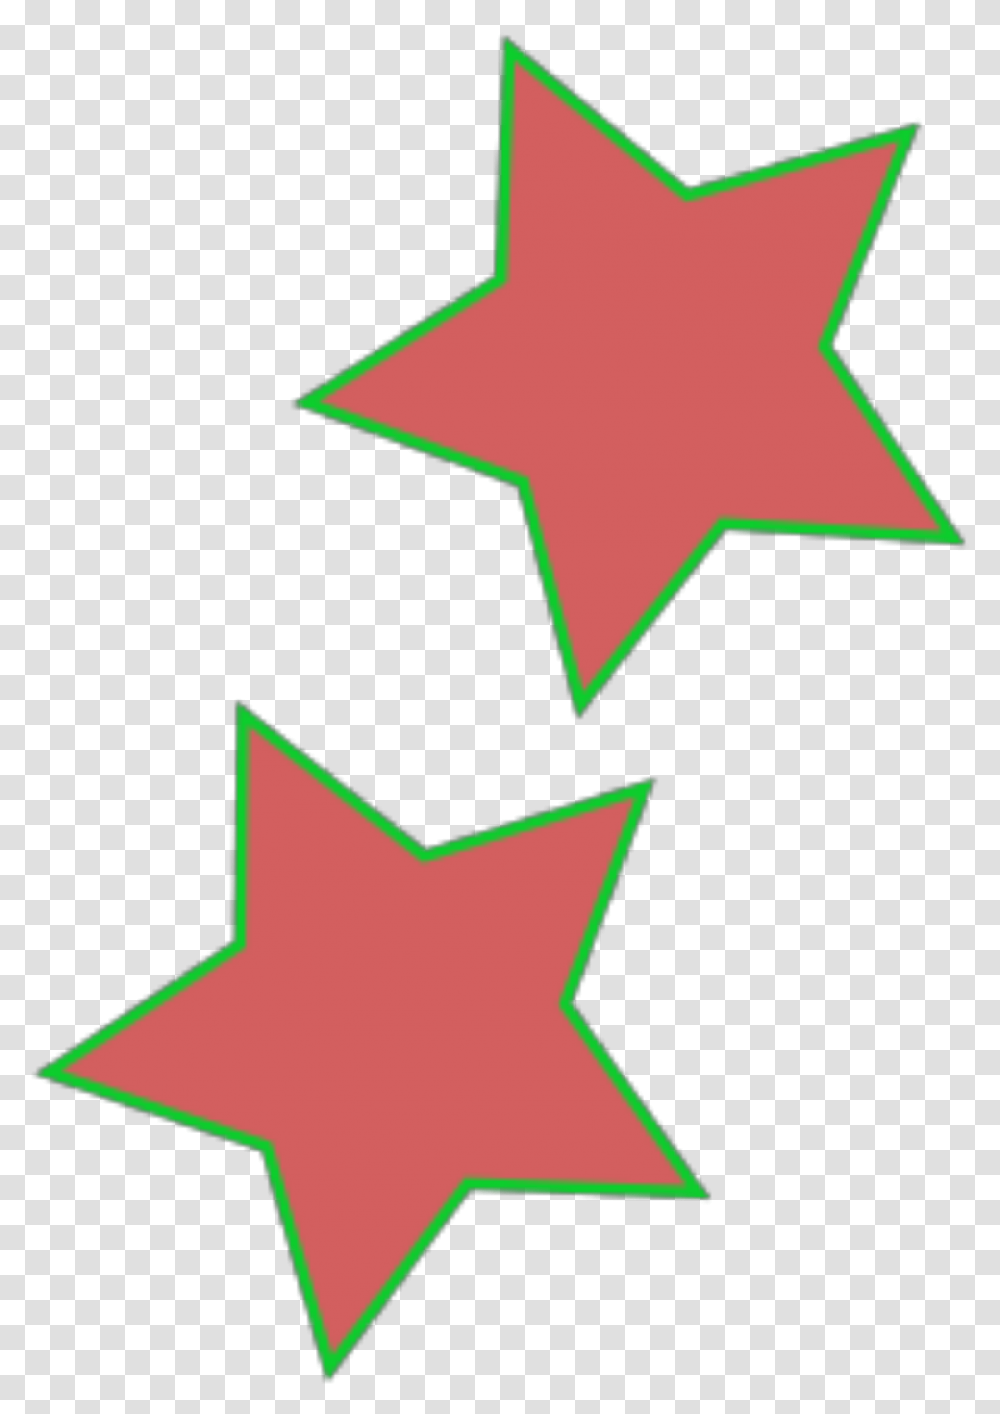 Blue Star Svg Clip Art For Web Download Clip Art Pink Stars Background Free, Symbol, Star Symbol,  Transparent Png